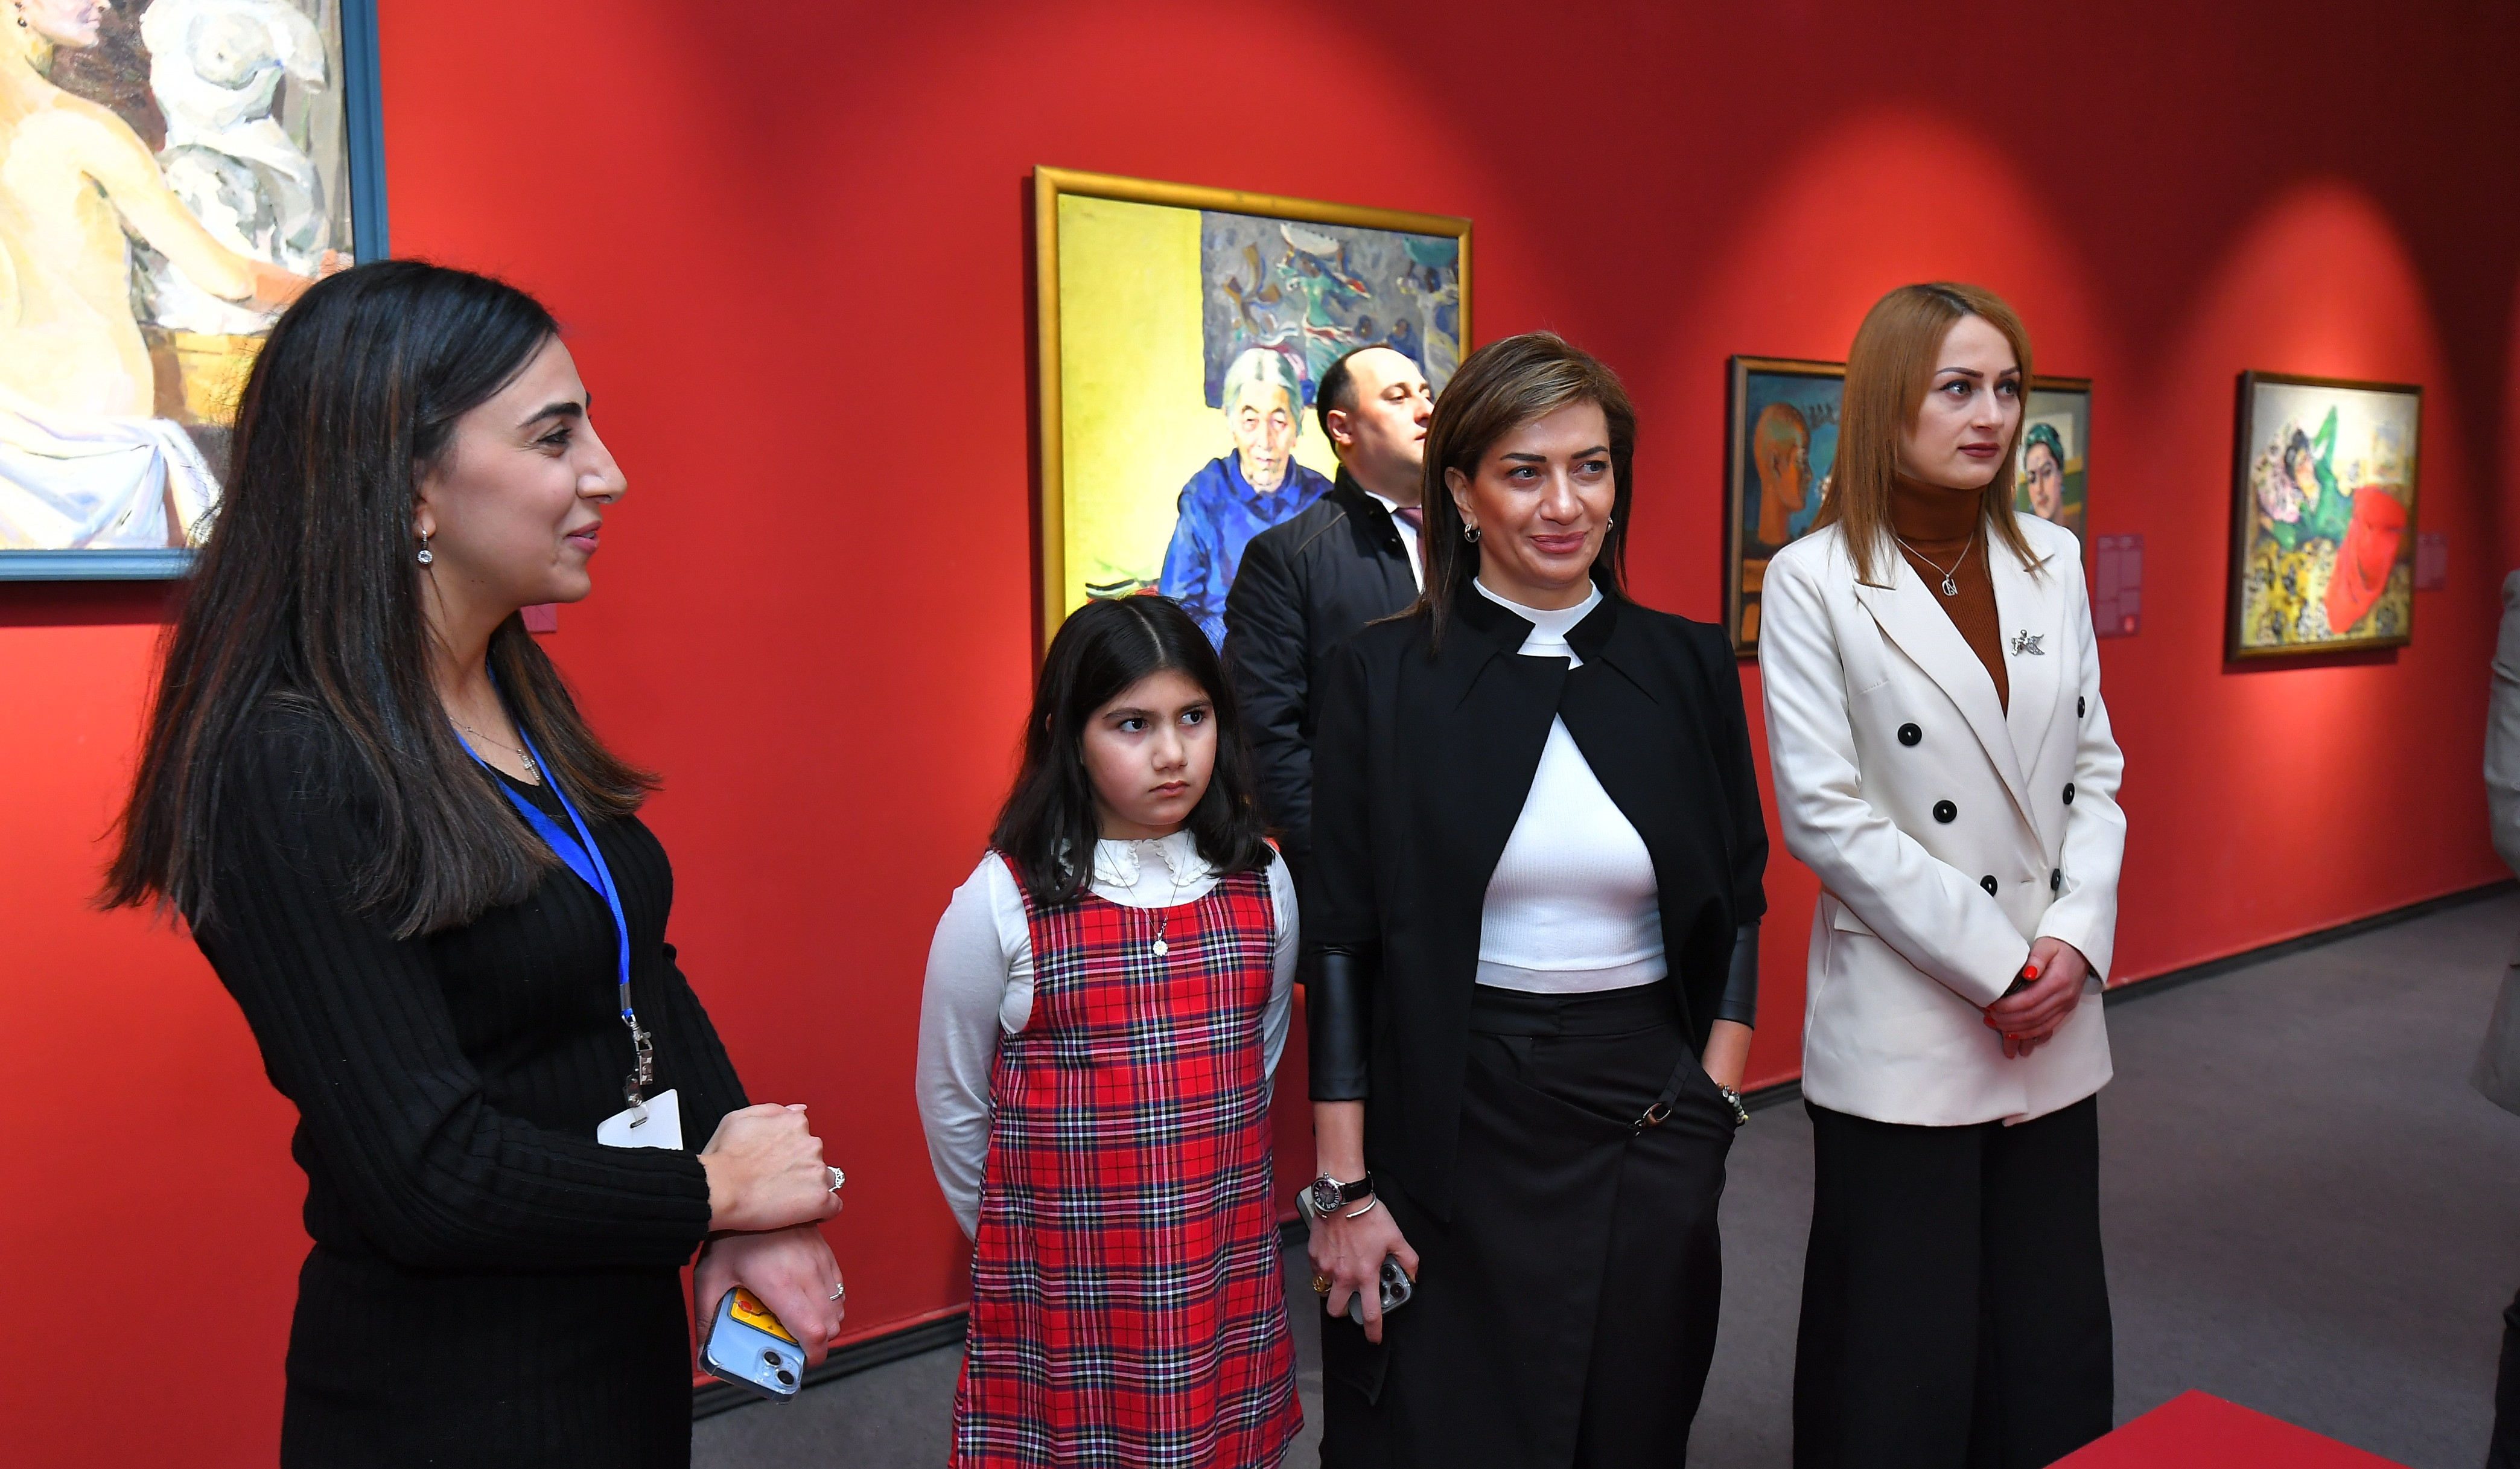 ՀՀ վարչապետի տիկինը Գյումրիում այցելել է մի շարք մշակութային կենտրոններ